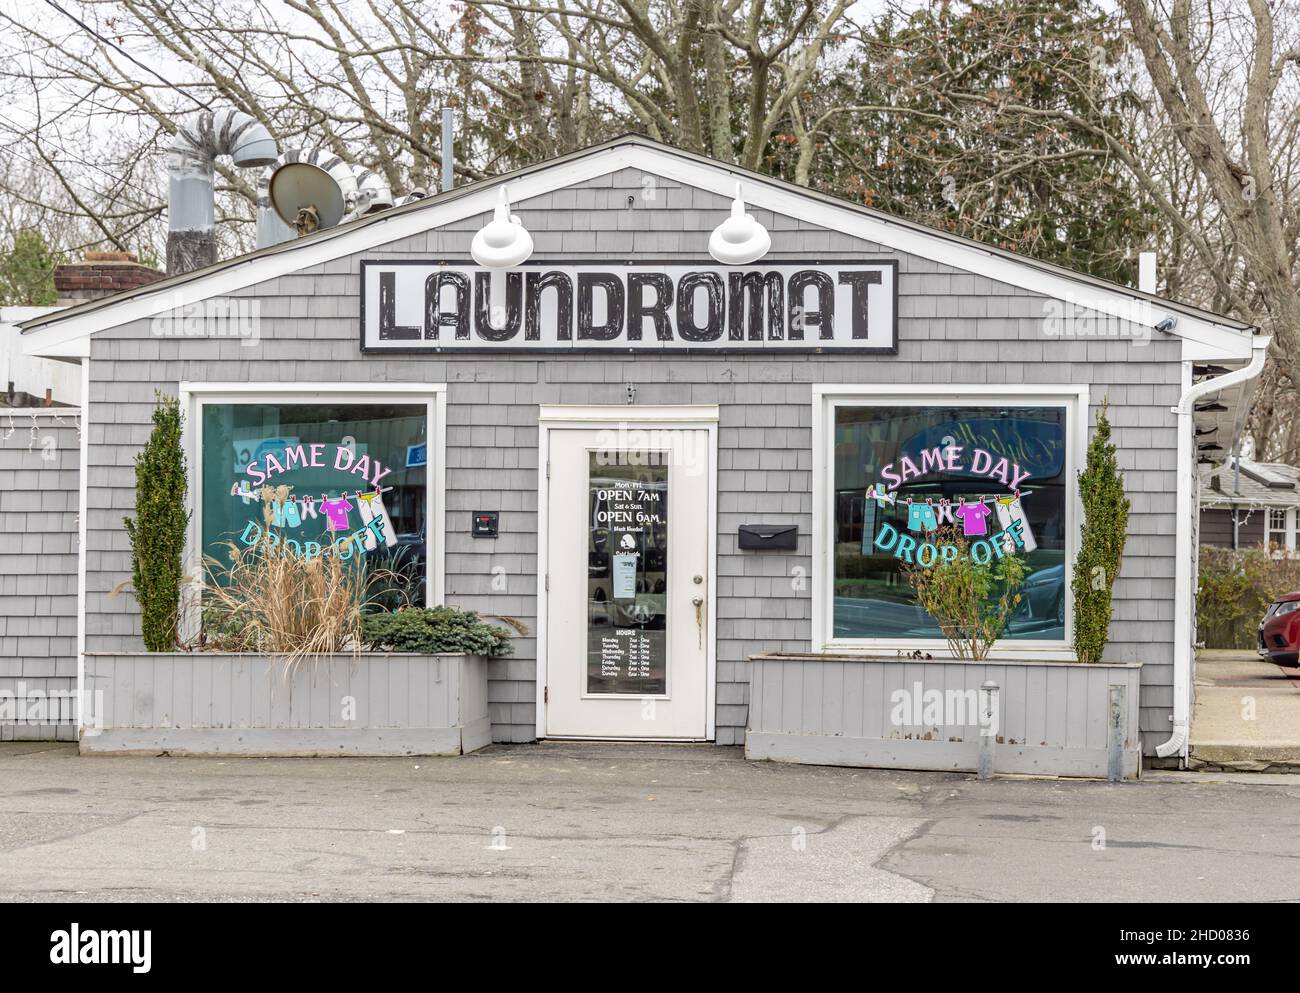 Laundromat in Southampton, NY Stock Photo